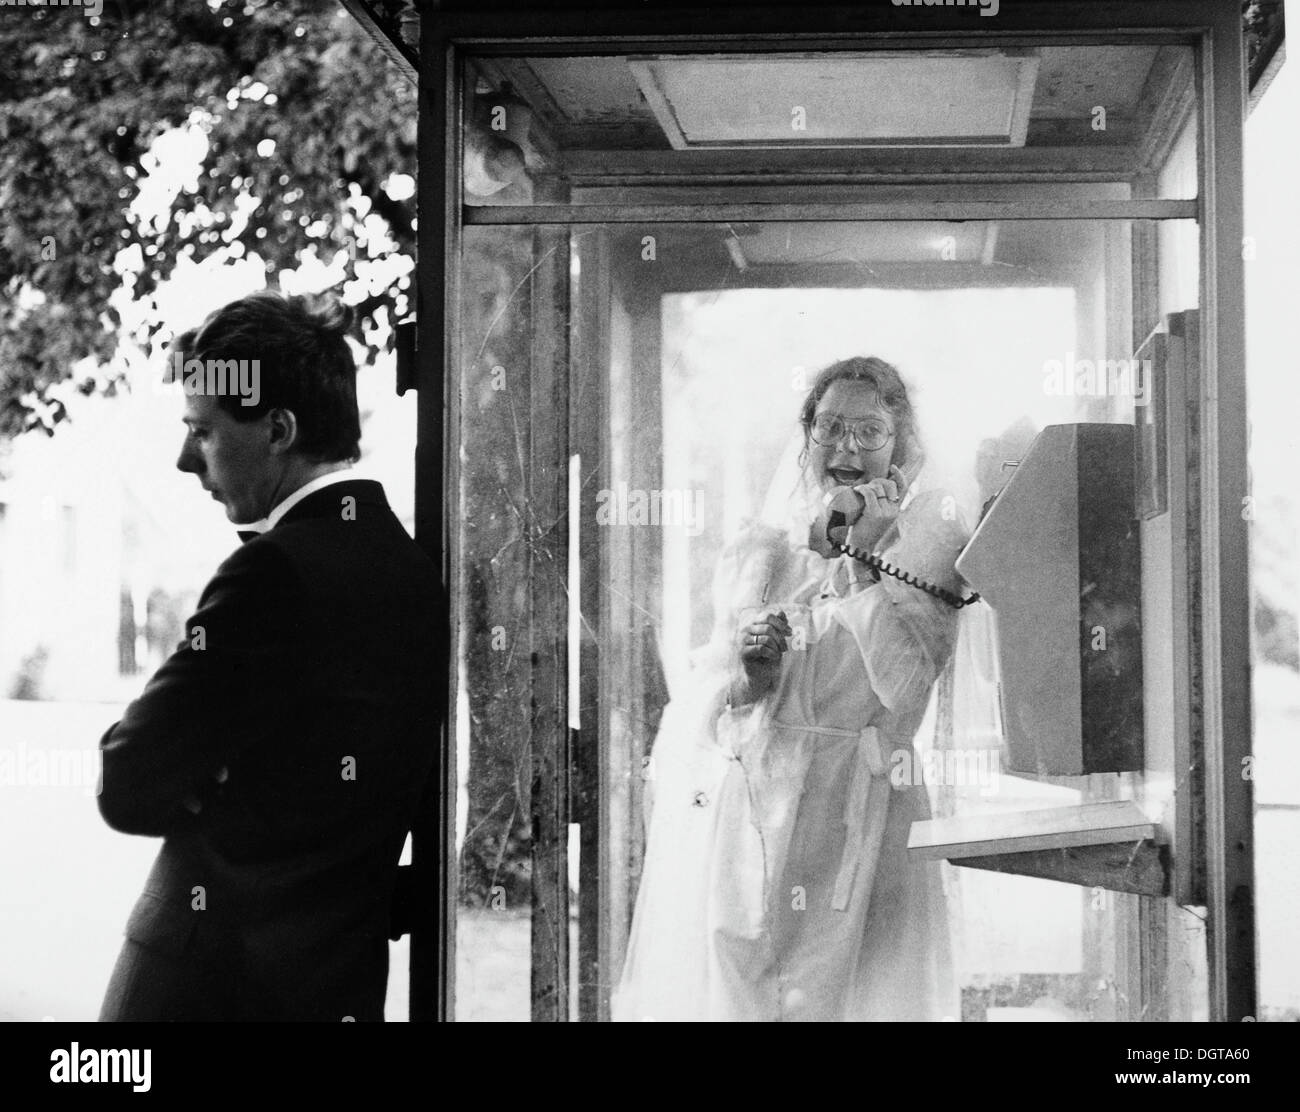 Hochzeit von Koppel in einer öffentlichen Telefonzelle, ca. 1984, Leipzig, Sachsen, DDR, Ost-Deutschland, Europa Stockfoto